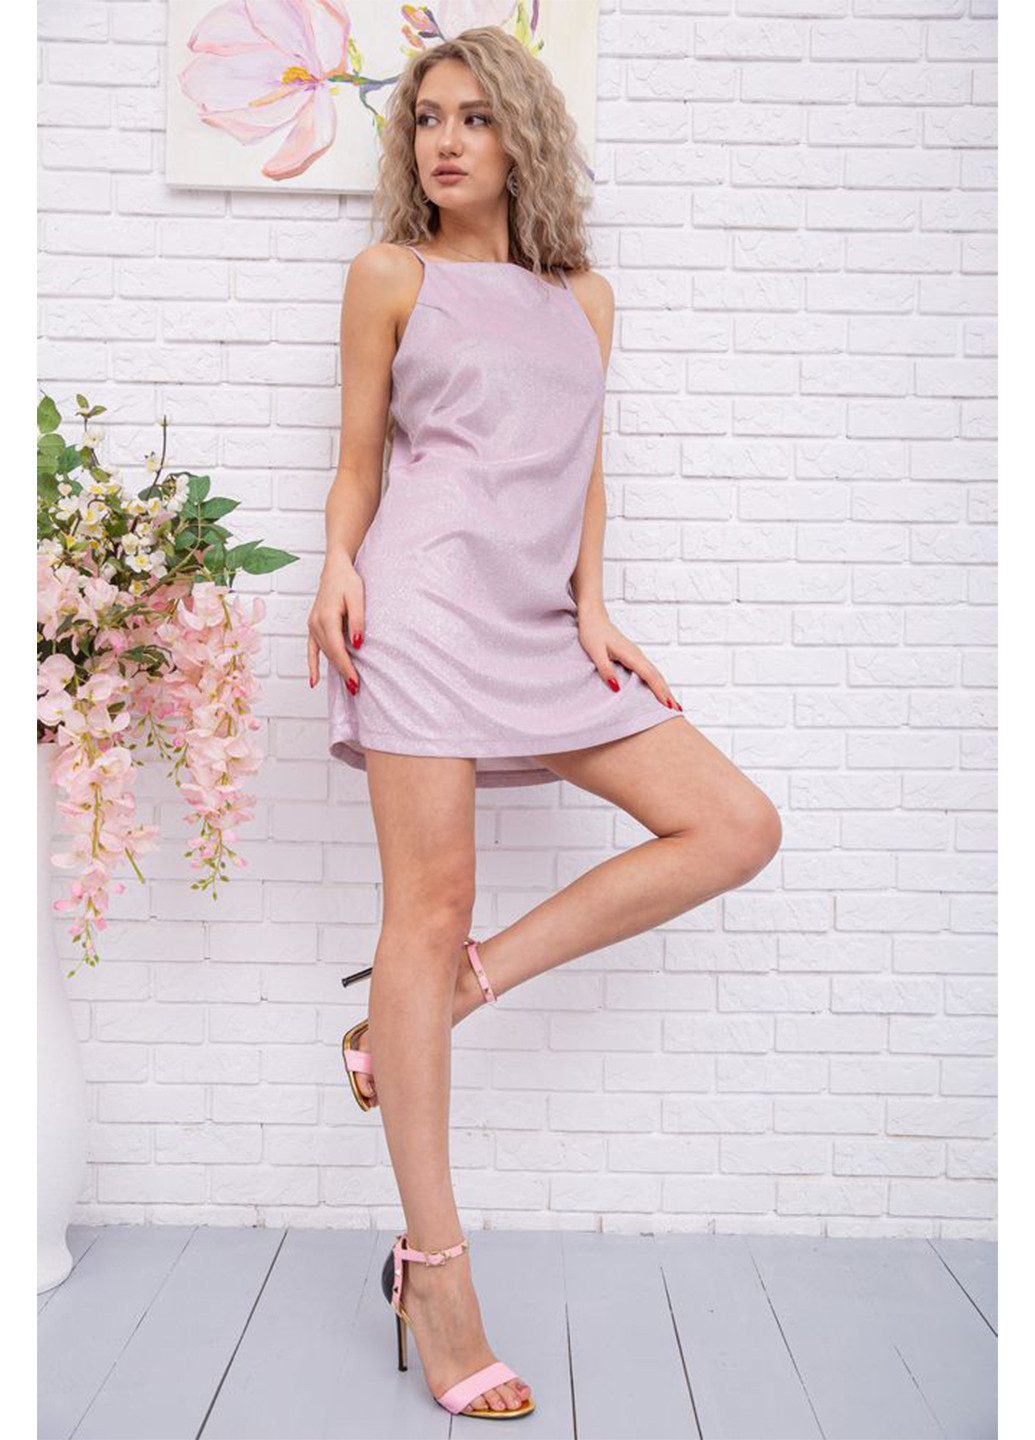 Світло-рожева коктейльна сукня з відкритою спиною Ager меланжева